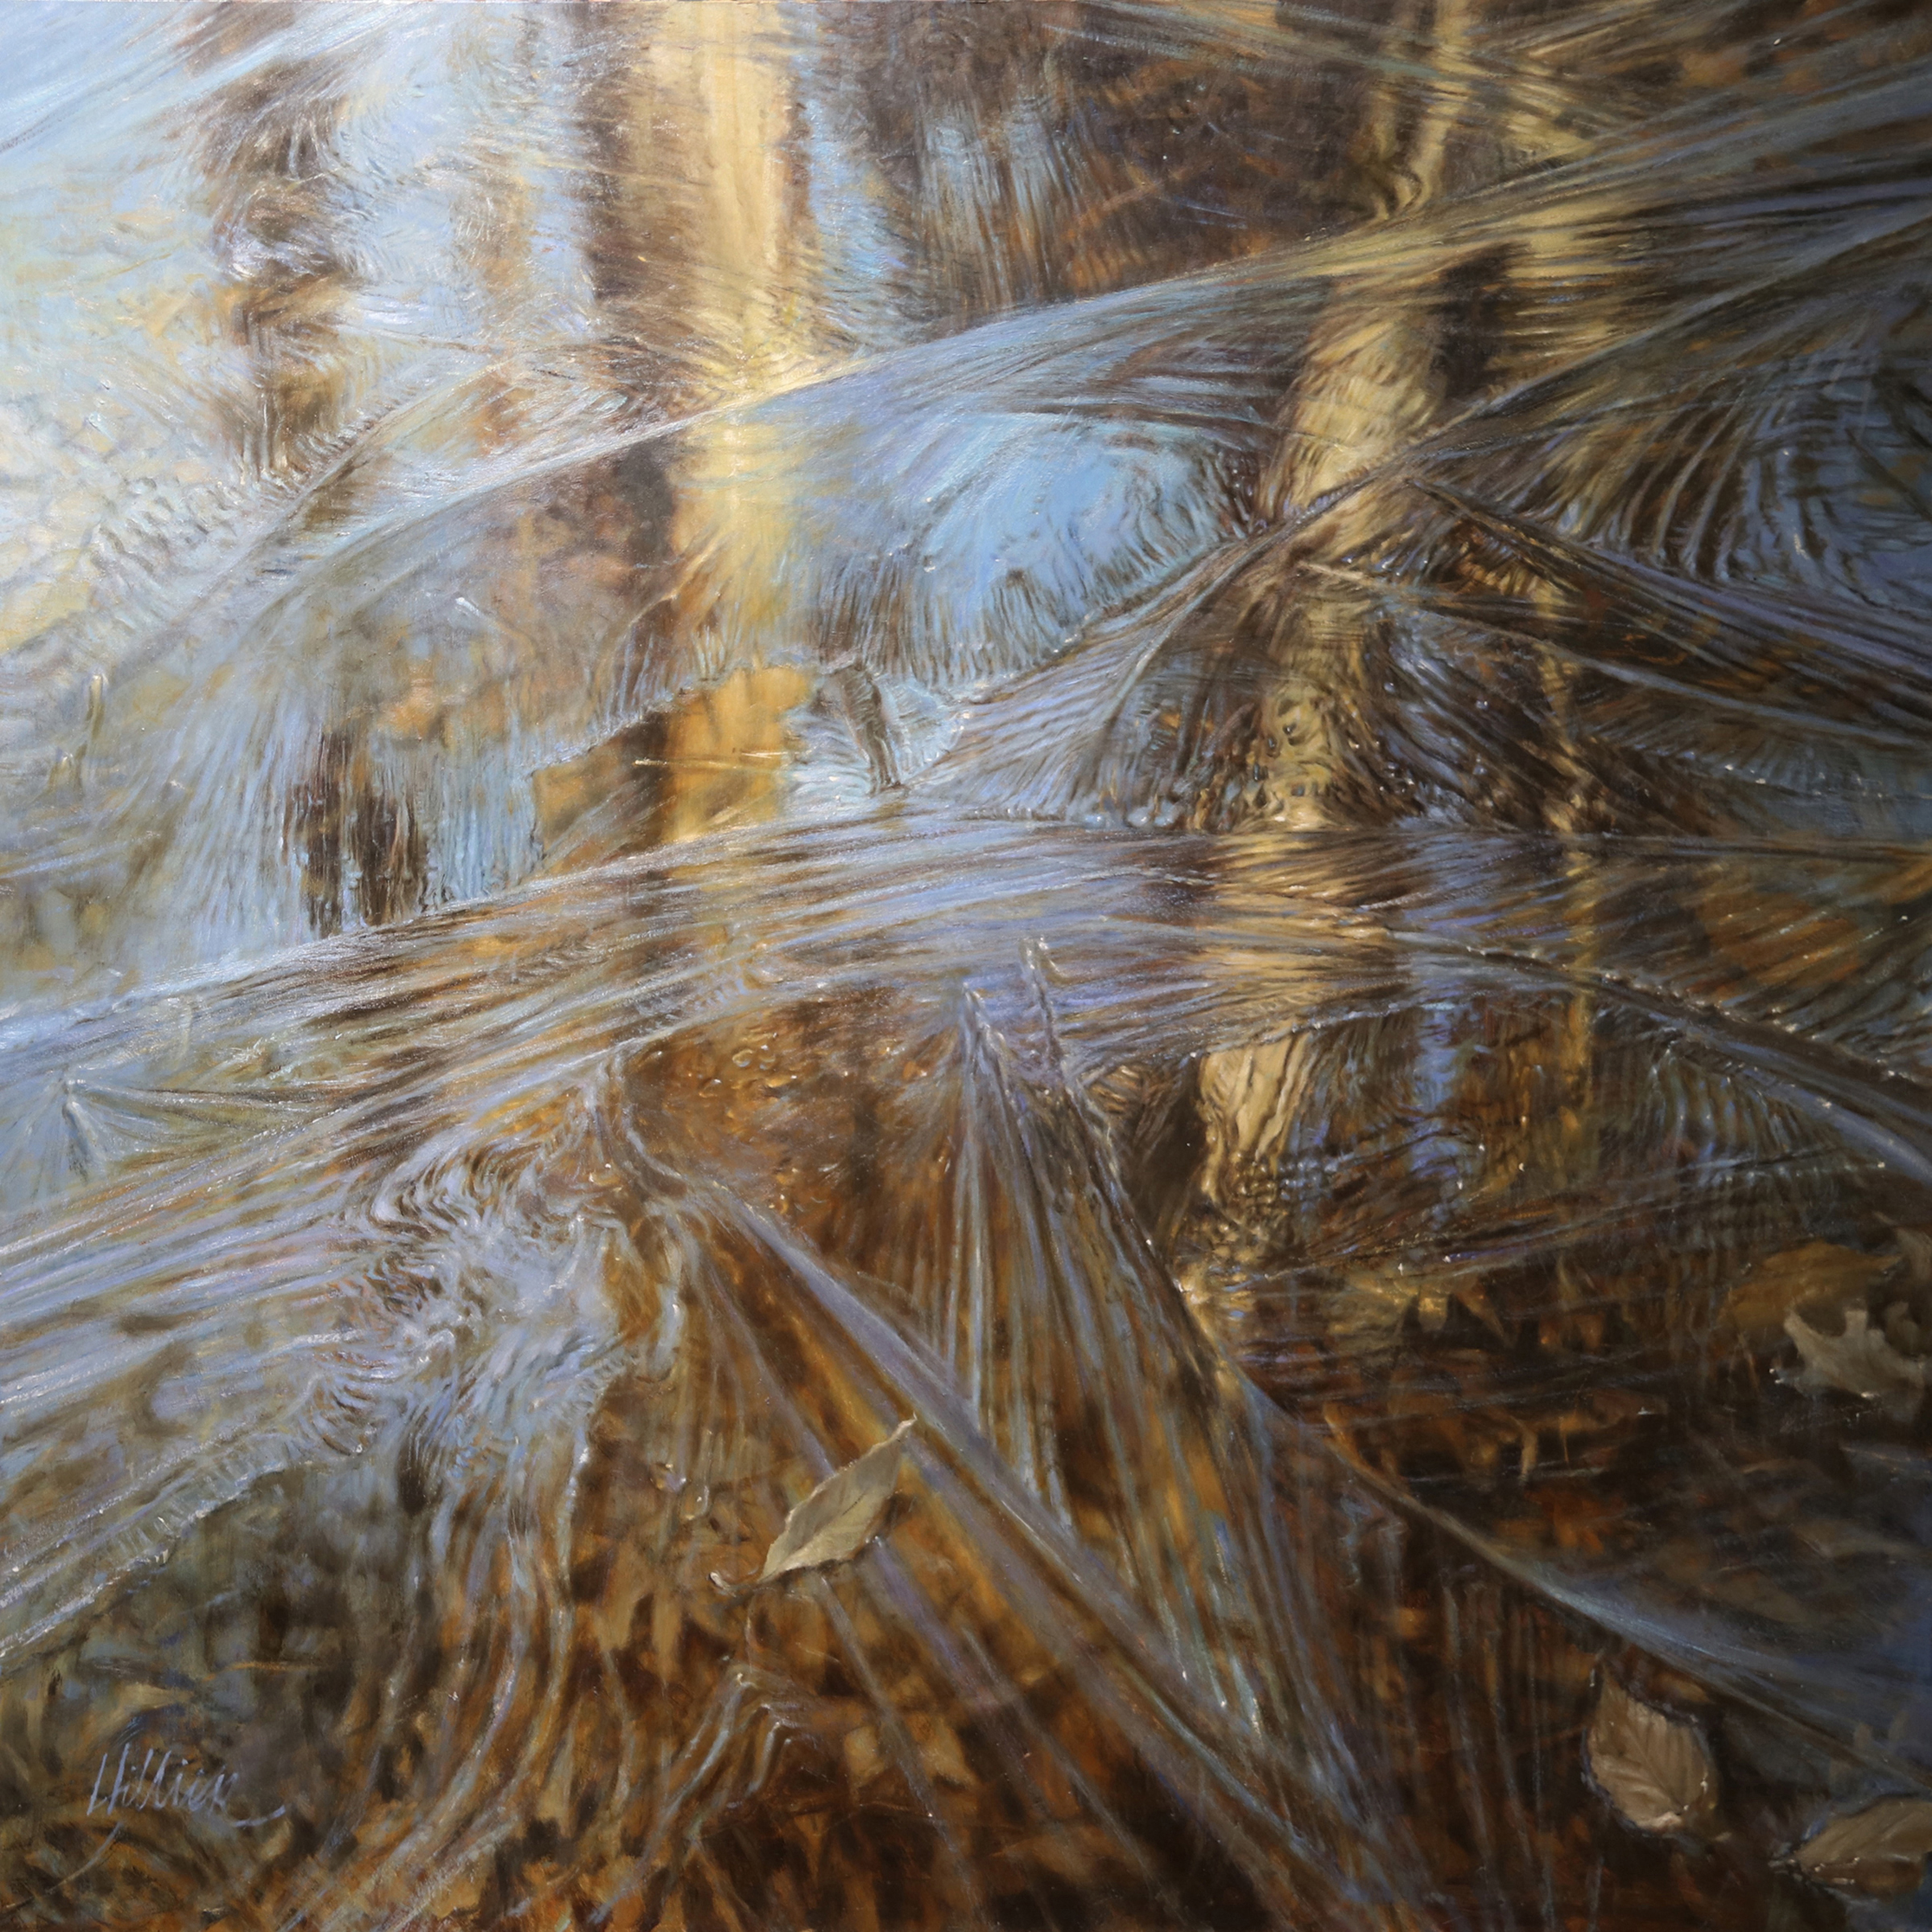 Matthew Hillier, "Under the Ice," oil, 30 x 30 in.